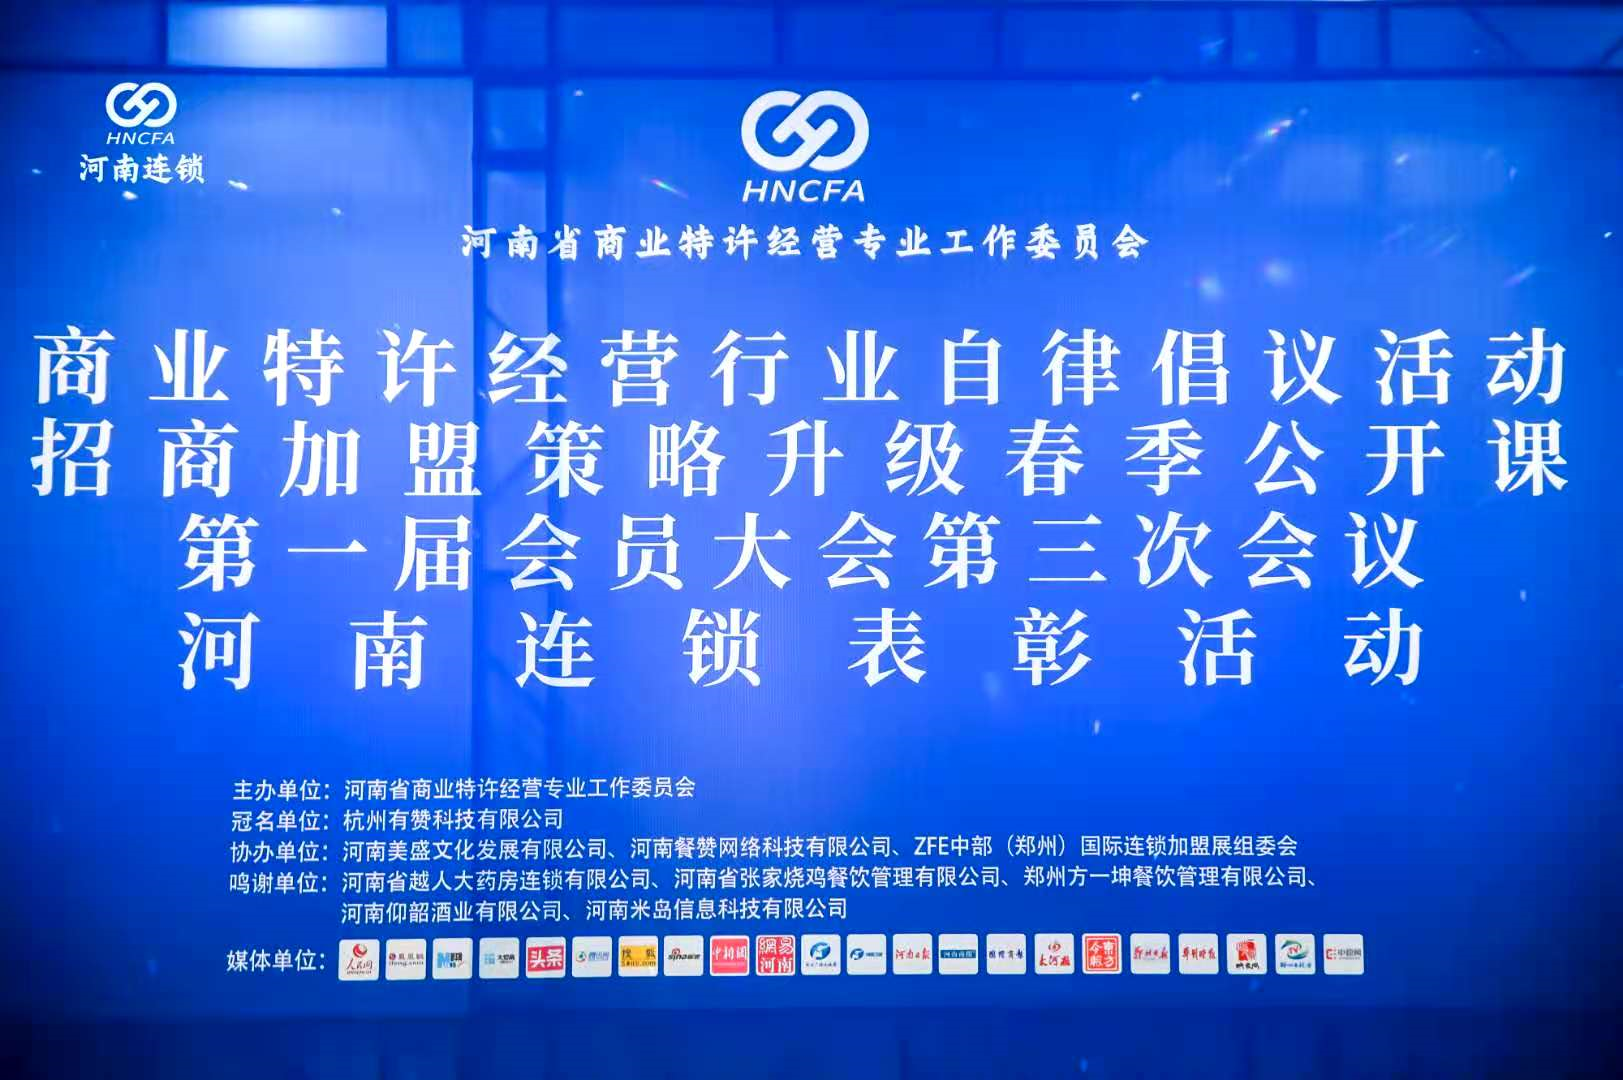 鄭州天美餐飲管理有限公司應邀參加河南省商業特許經營專業工作委員會大會